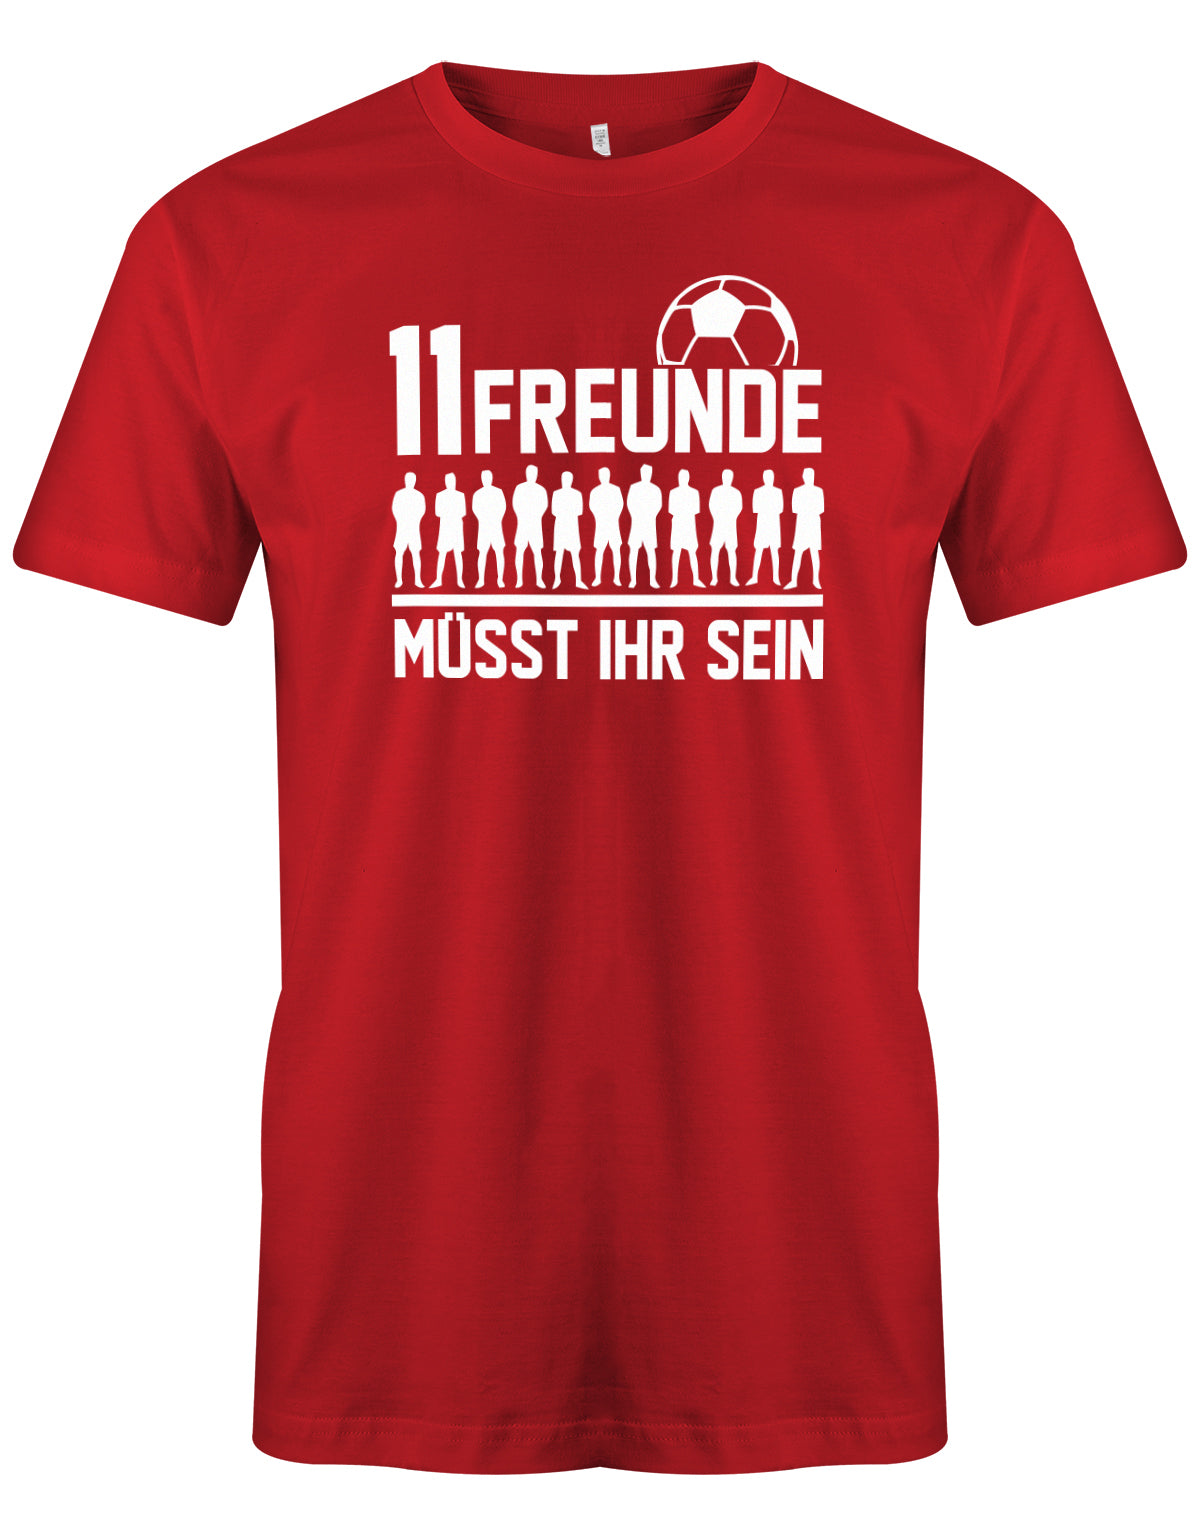 11 Freunde müsst ihr sein - Fußball - Herren T-Shirt Rot